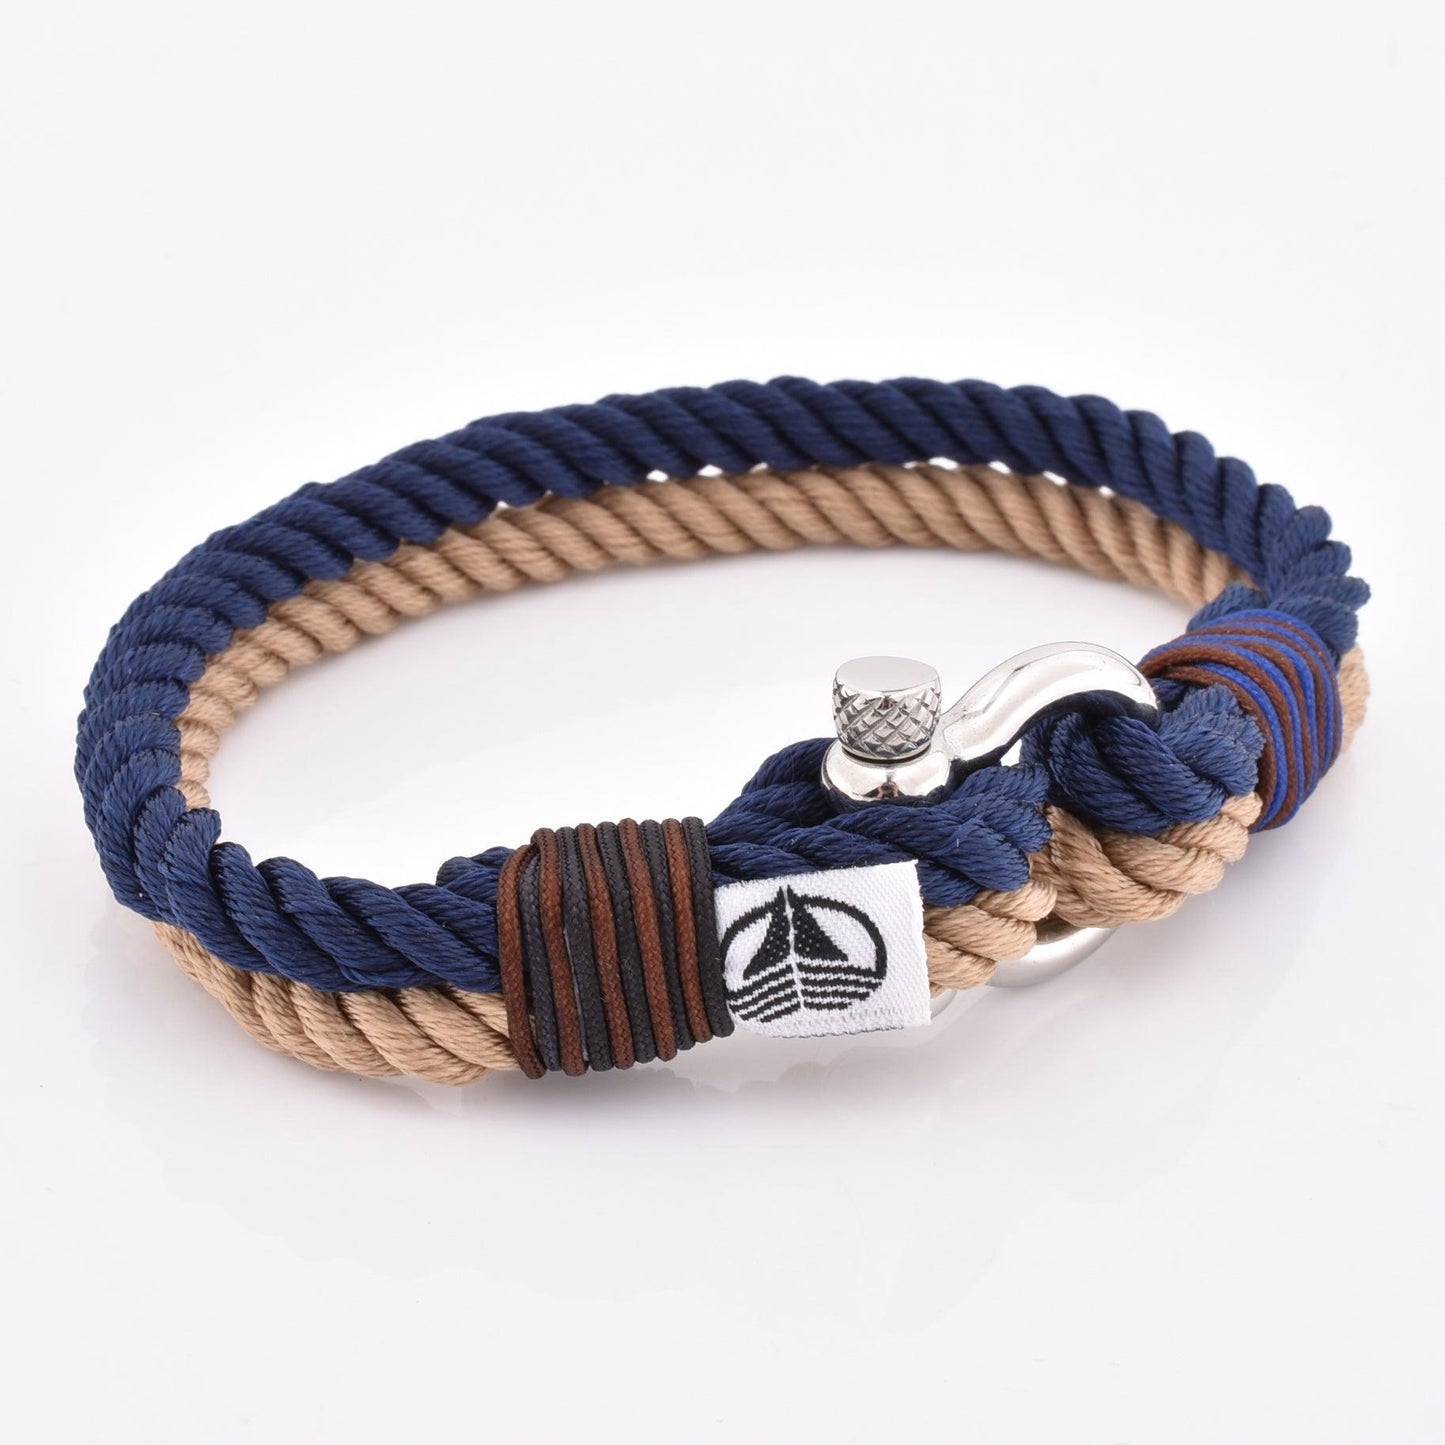 Opvoeding traagheid rouw Sail rope armband voor vrouwen en mannen | Moncadeau.de